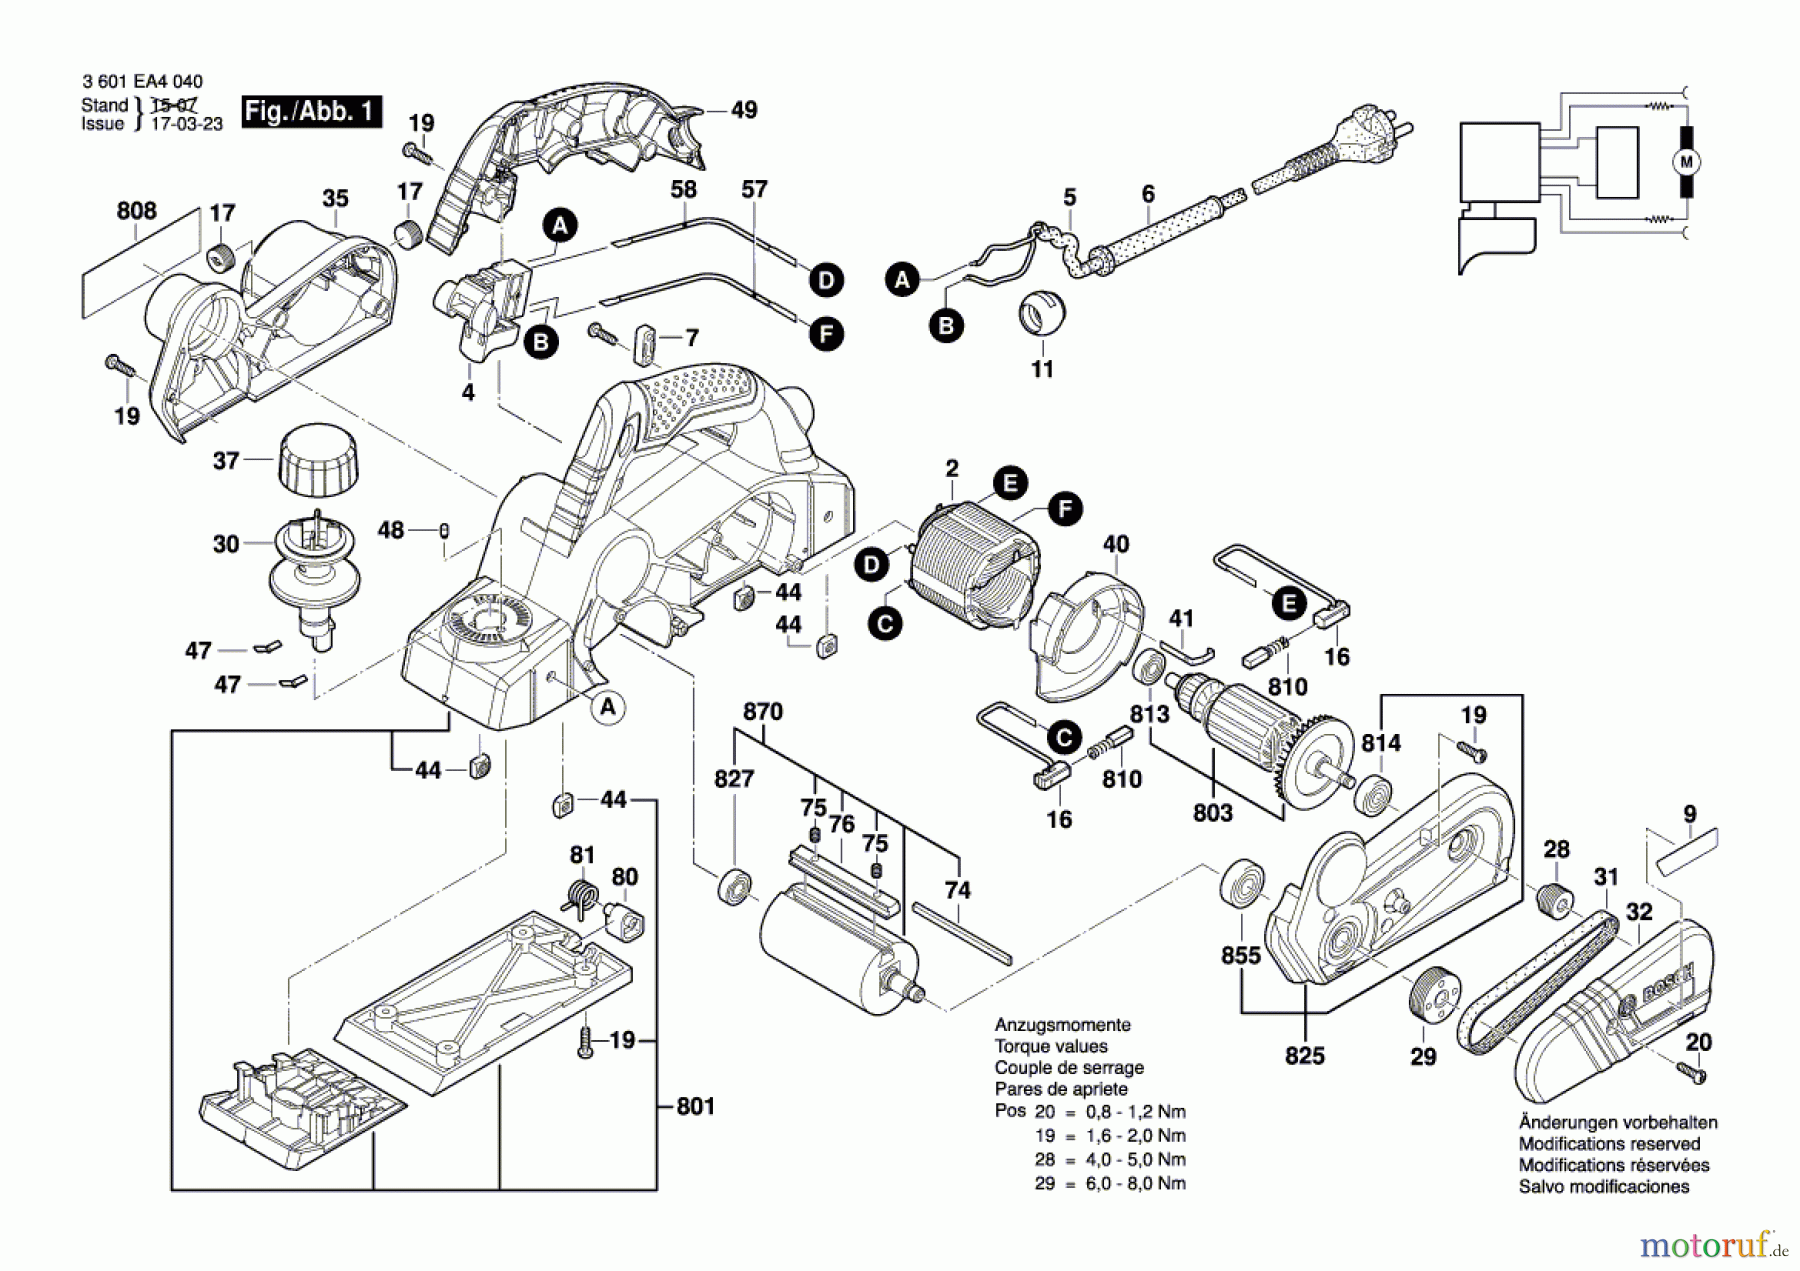  Bosch Werkzeug Handhobel GHO 16-82 D Seite 1